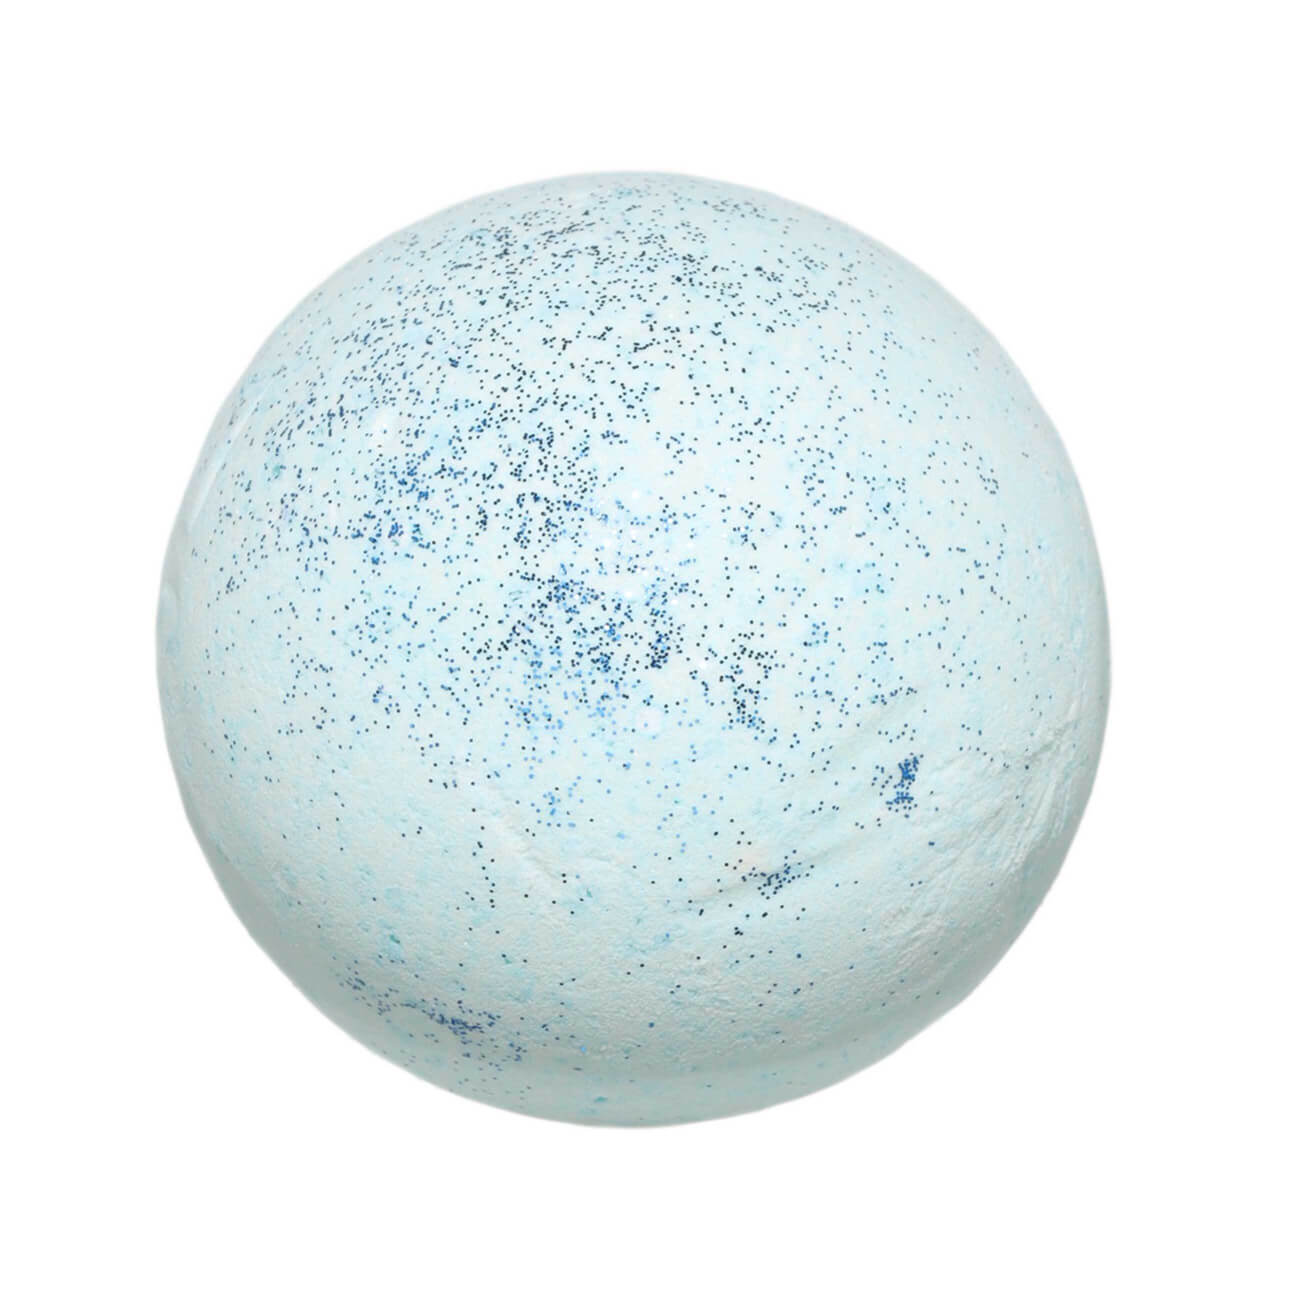 Бомбочка для ванны, 130 гр, с блестками, Ягодный аромат, голубая, Шар, Sparkle body